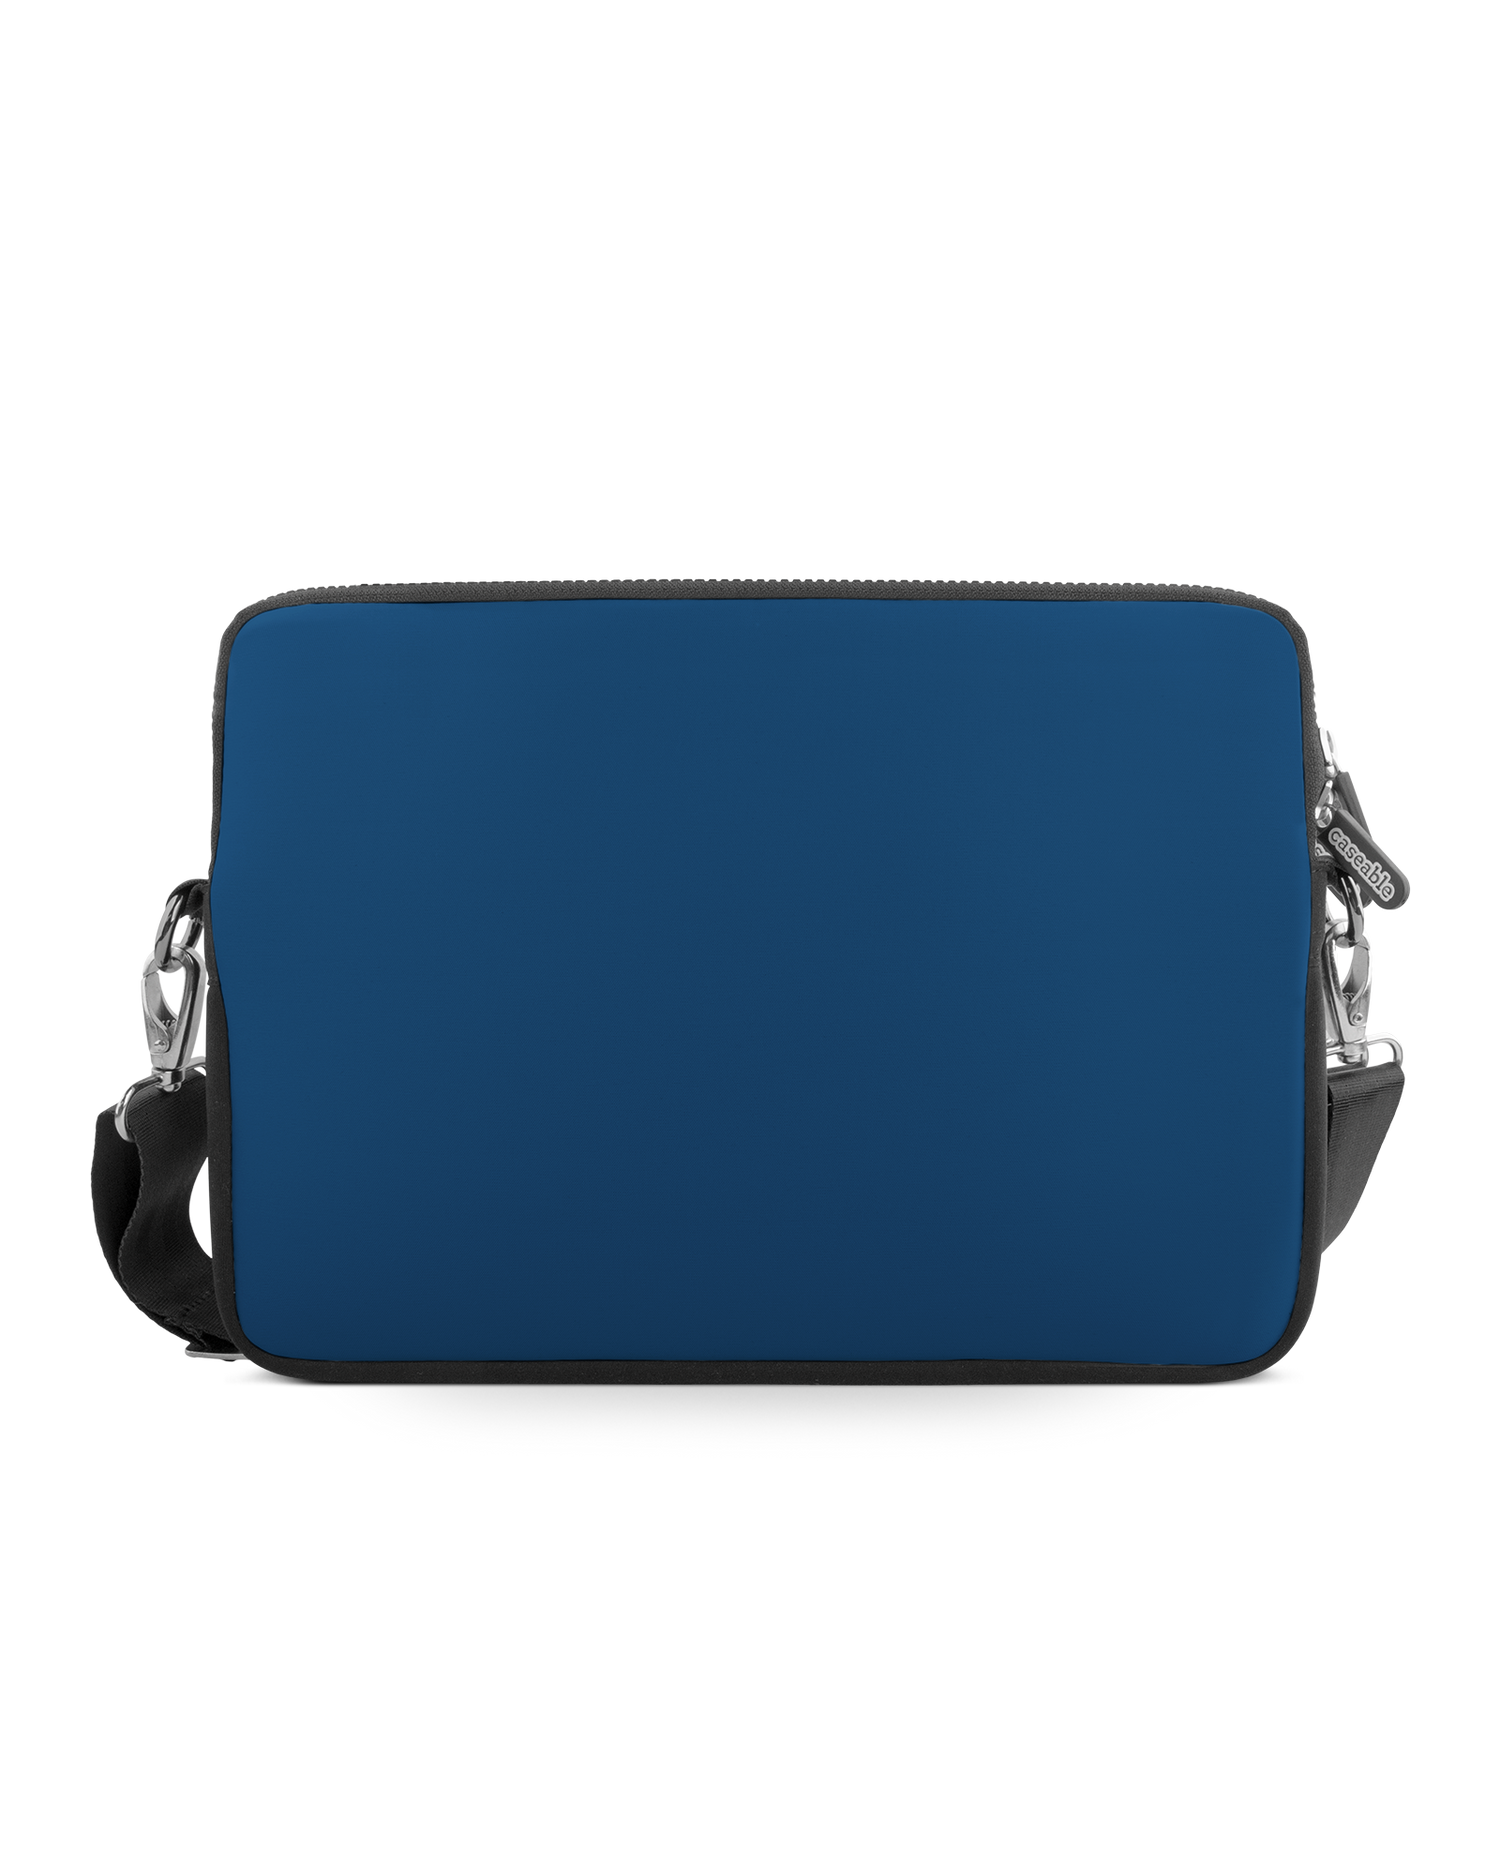 CLASSIC BLUE Premium Laptop Bag 13-14 inch: Front View